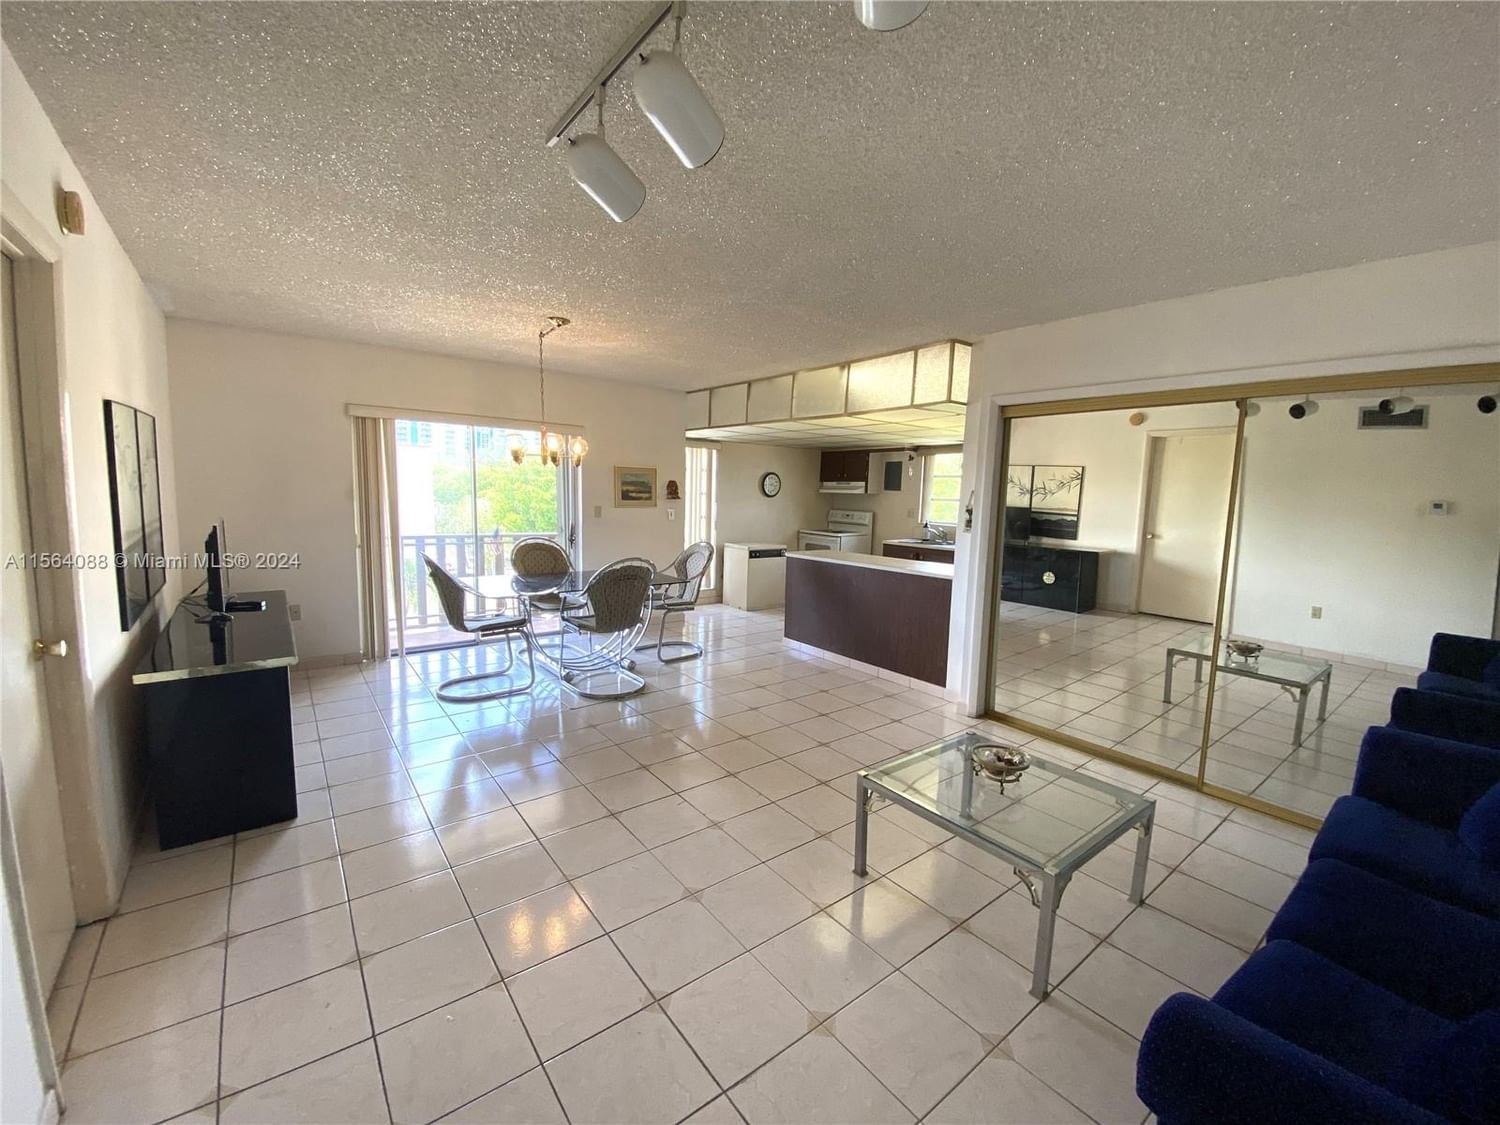 Real estate property located at 4715 7th St #405-2, Miami-Dade County, SUNSET VILLAS CONDO, Miami, FL